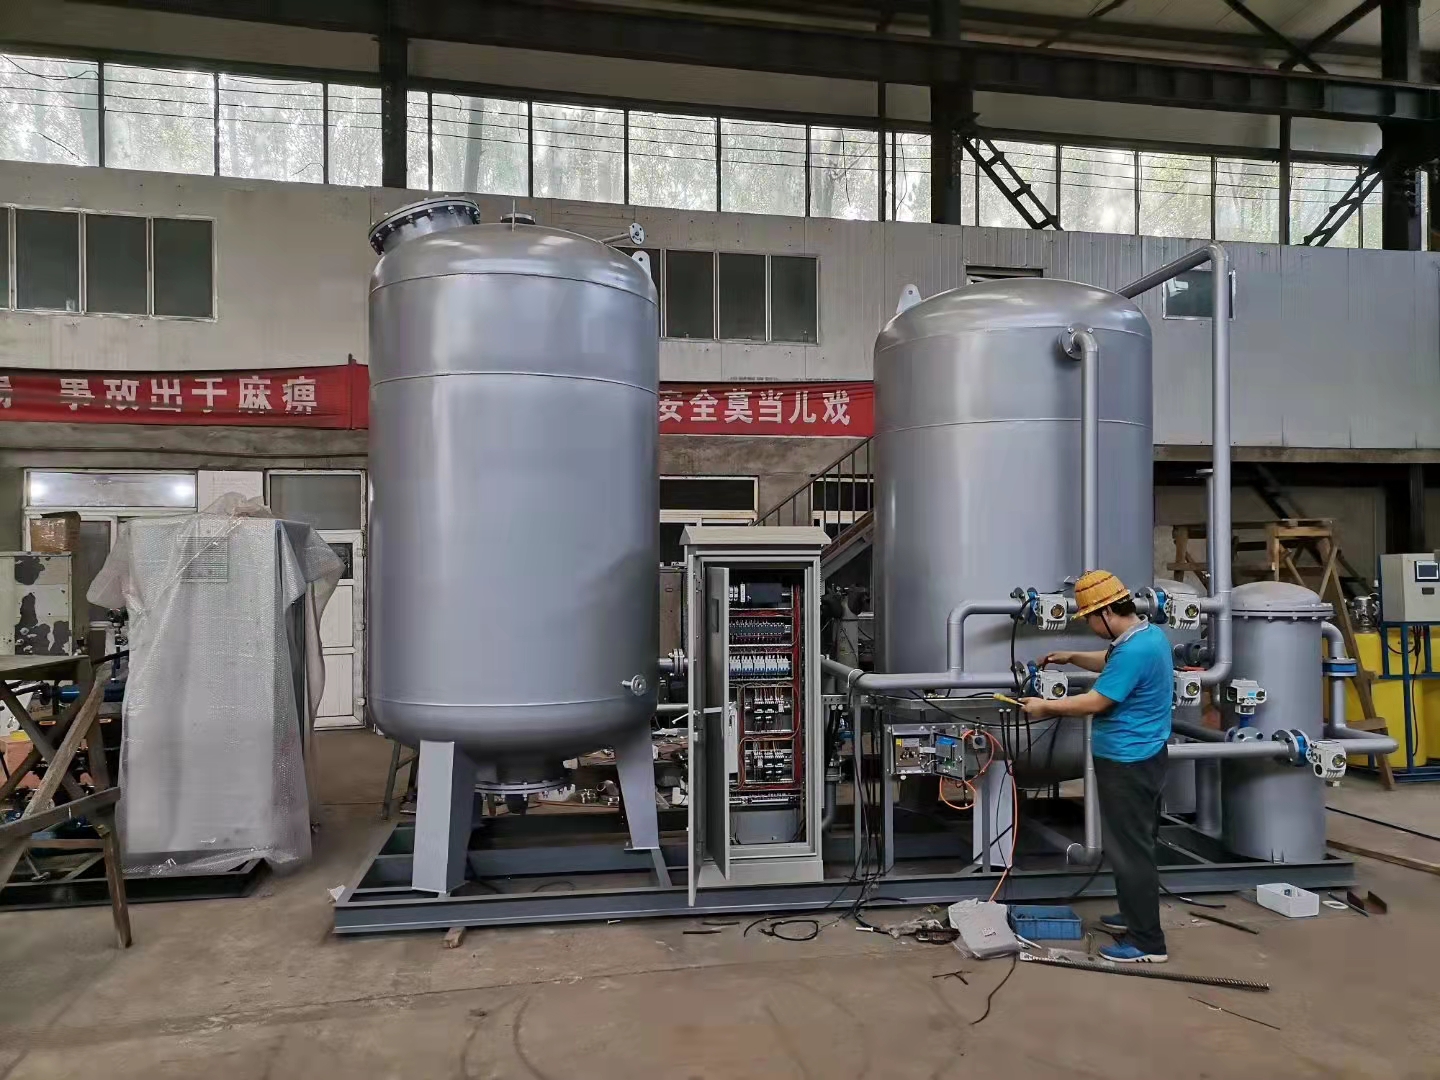 北京勤诚创业科技有限公司致力于冷凝水除铁设备的研发及制造